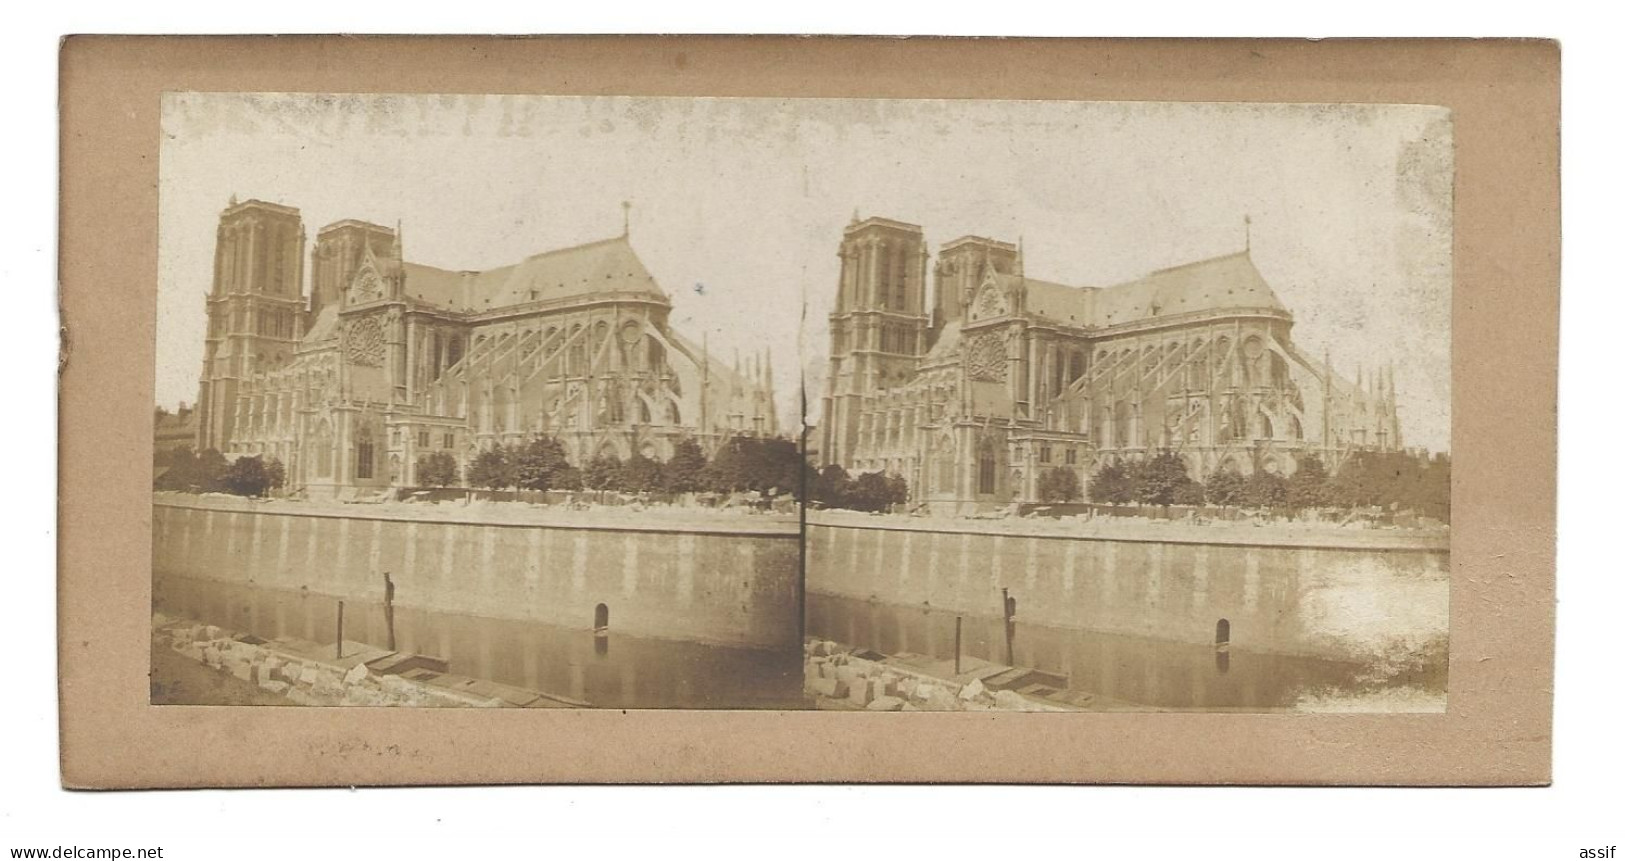 Paris Notre Dame ( Sans Sa Flèche - Avant 1860 ) Photographie Stéréoscopique - Auteur ? - Stereoscopic